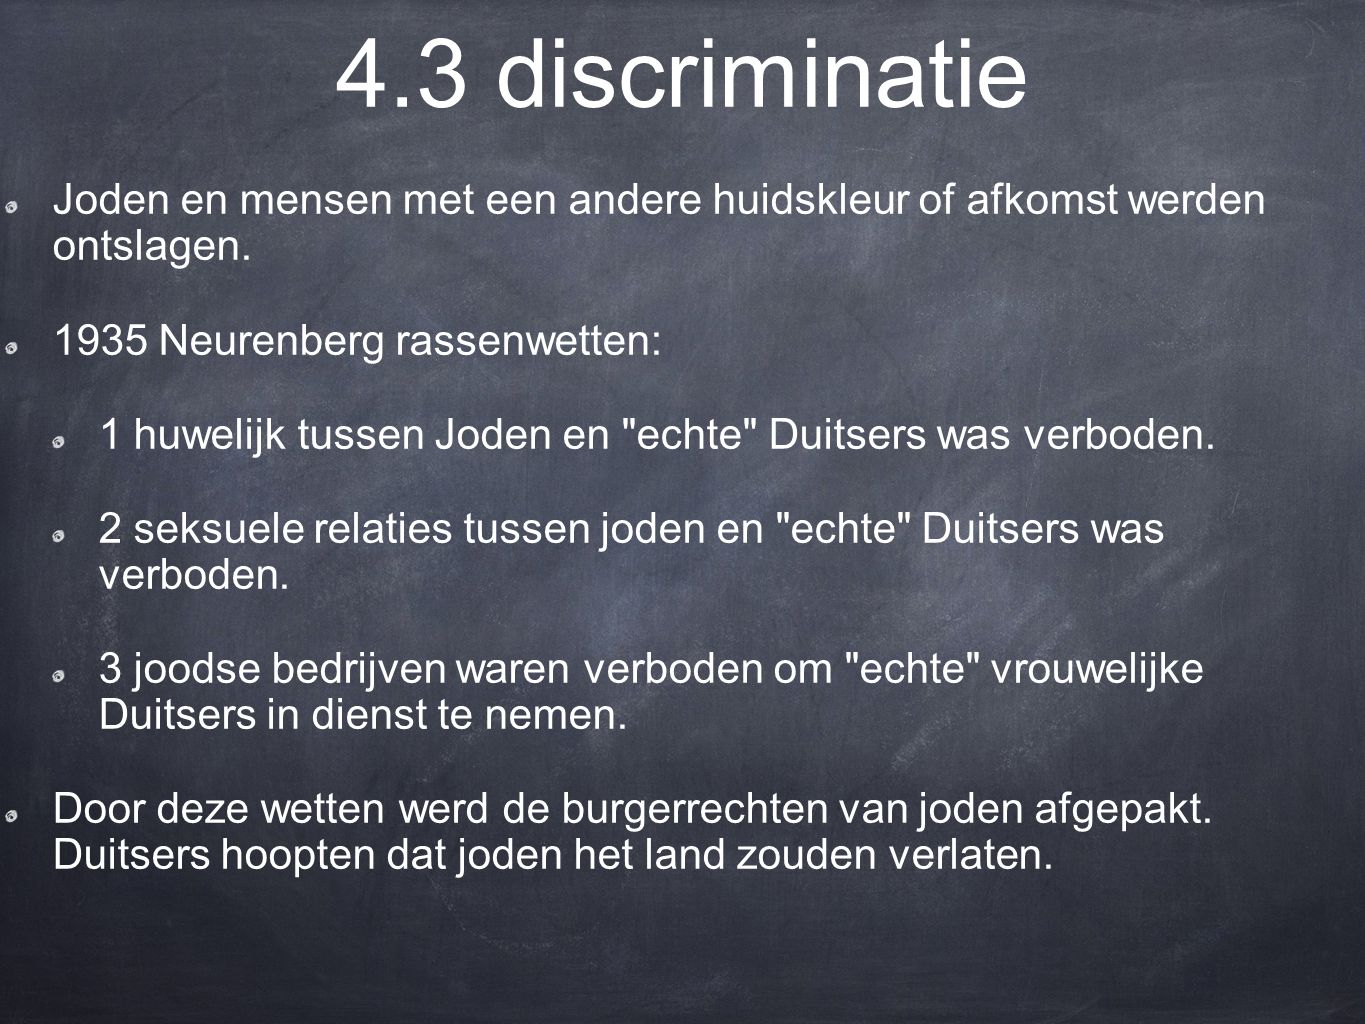 4.3 discriminatie Joden en mensen met een andere huidskleur of afkomst werden ontslagen Neurenberg rassenwetten: